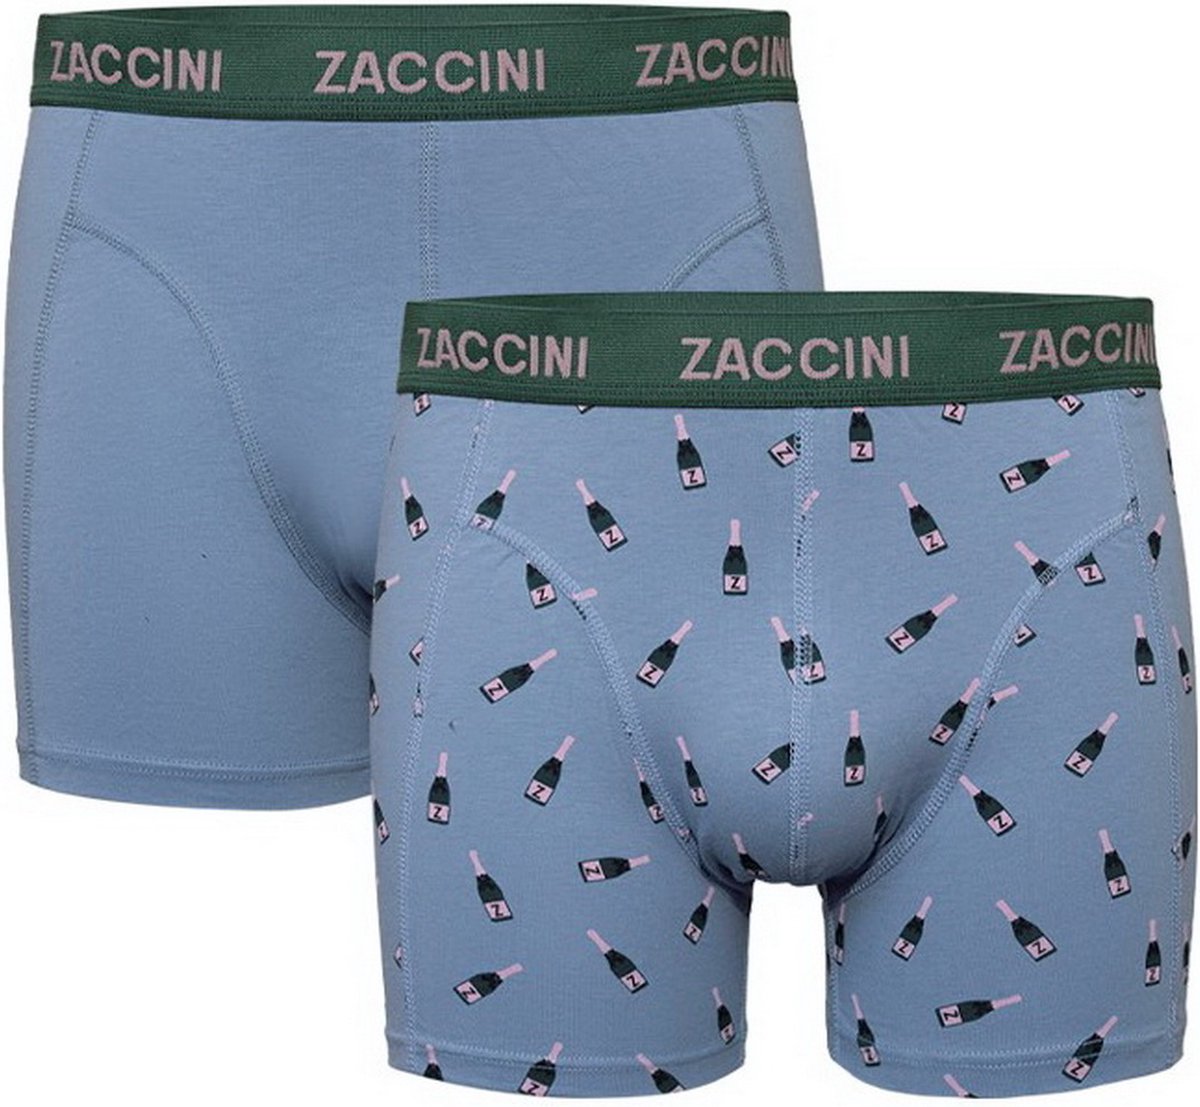 Zaccini - 2-Pack Boxershorts - Champagne - Blauw